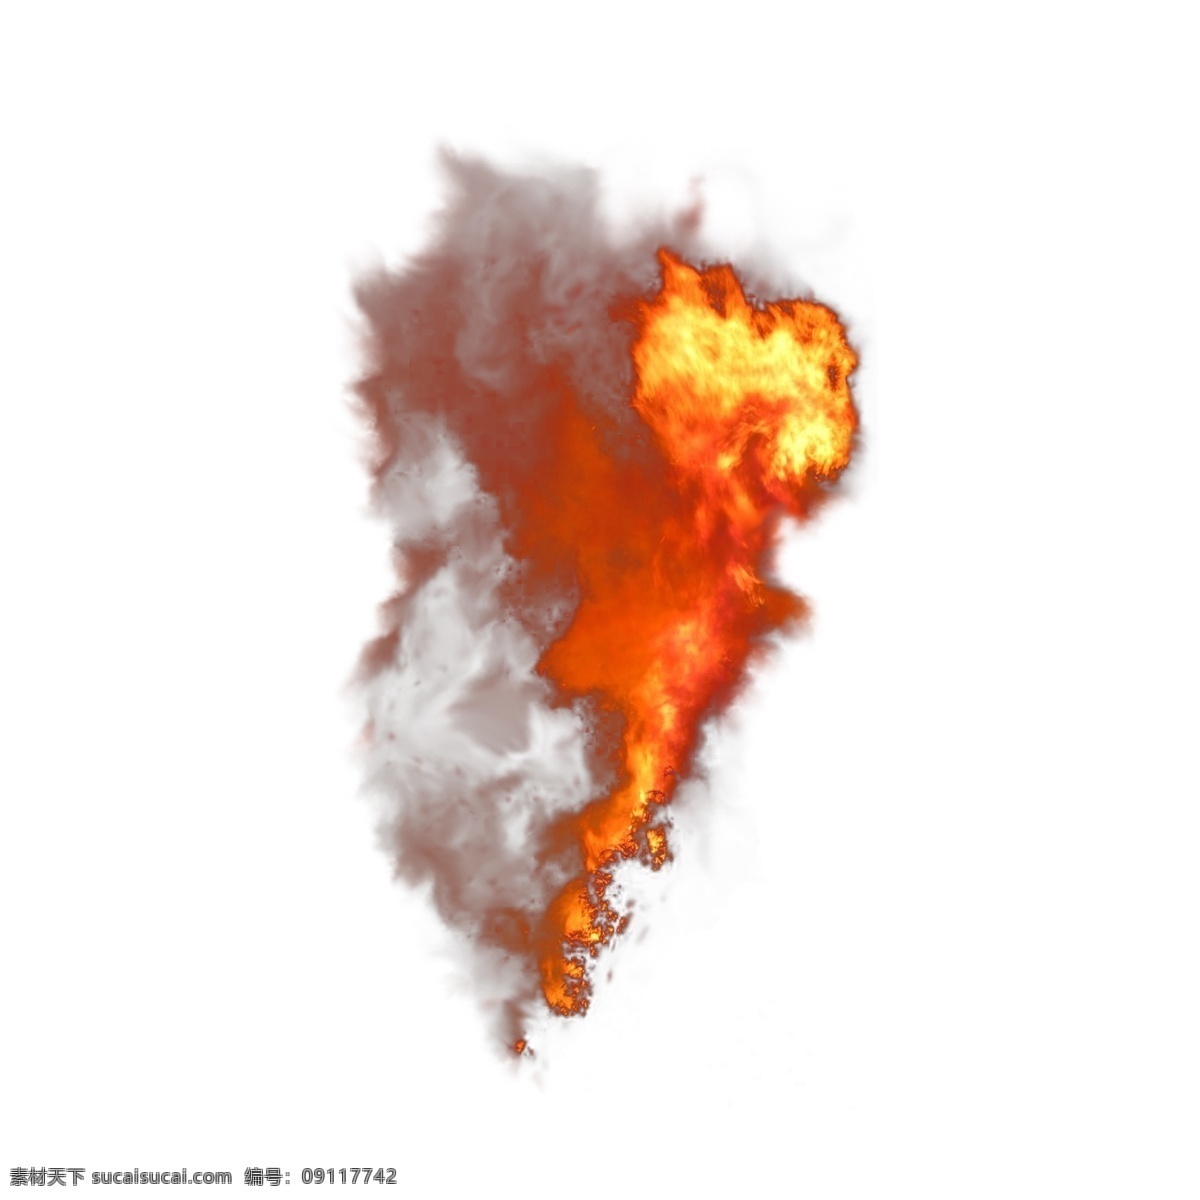 写实 火焰 烟雾 自然 元素 烟 红色 黄色 腾空 爆炸 火焰特效 爆炸火焰 腾空的火焰 写实火焰 火焰烟雾 喷火 战场 炸弹